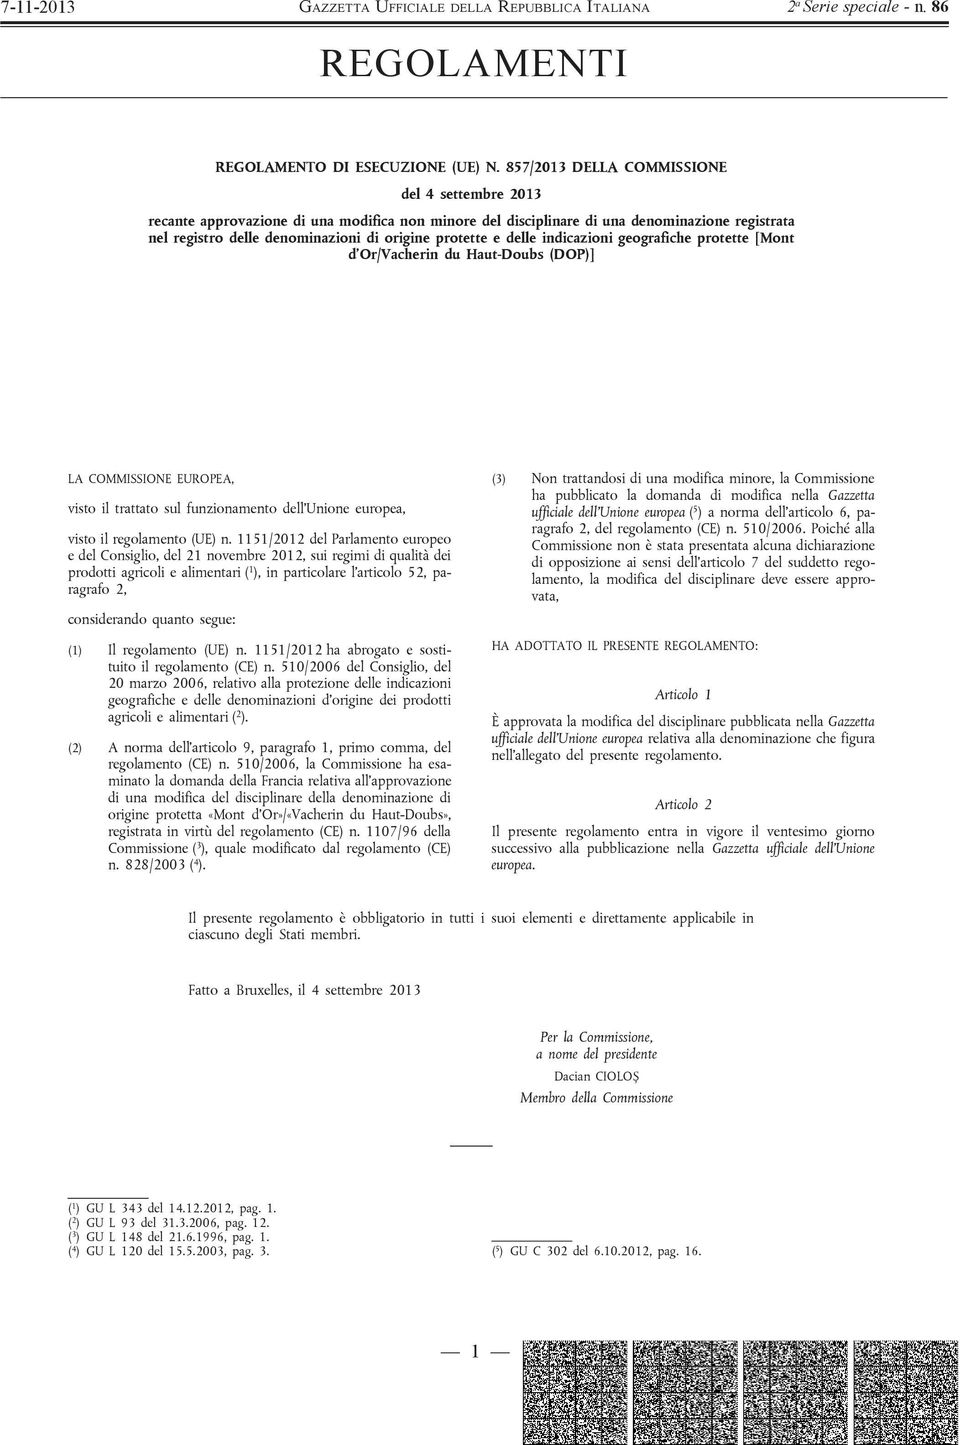 delle indicazioni geografiche protette [Mont d Or/Vacherin du Haut-Doubs (DOP)] LA COMMISSIONE EUROPEA, visto il trattato sul funzionamento dell Unione europea, visto il regolamento (UE) n.